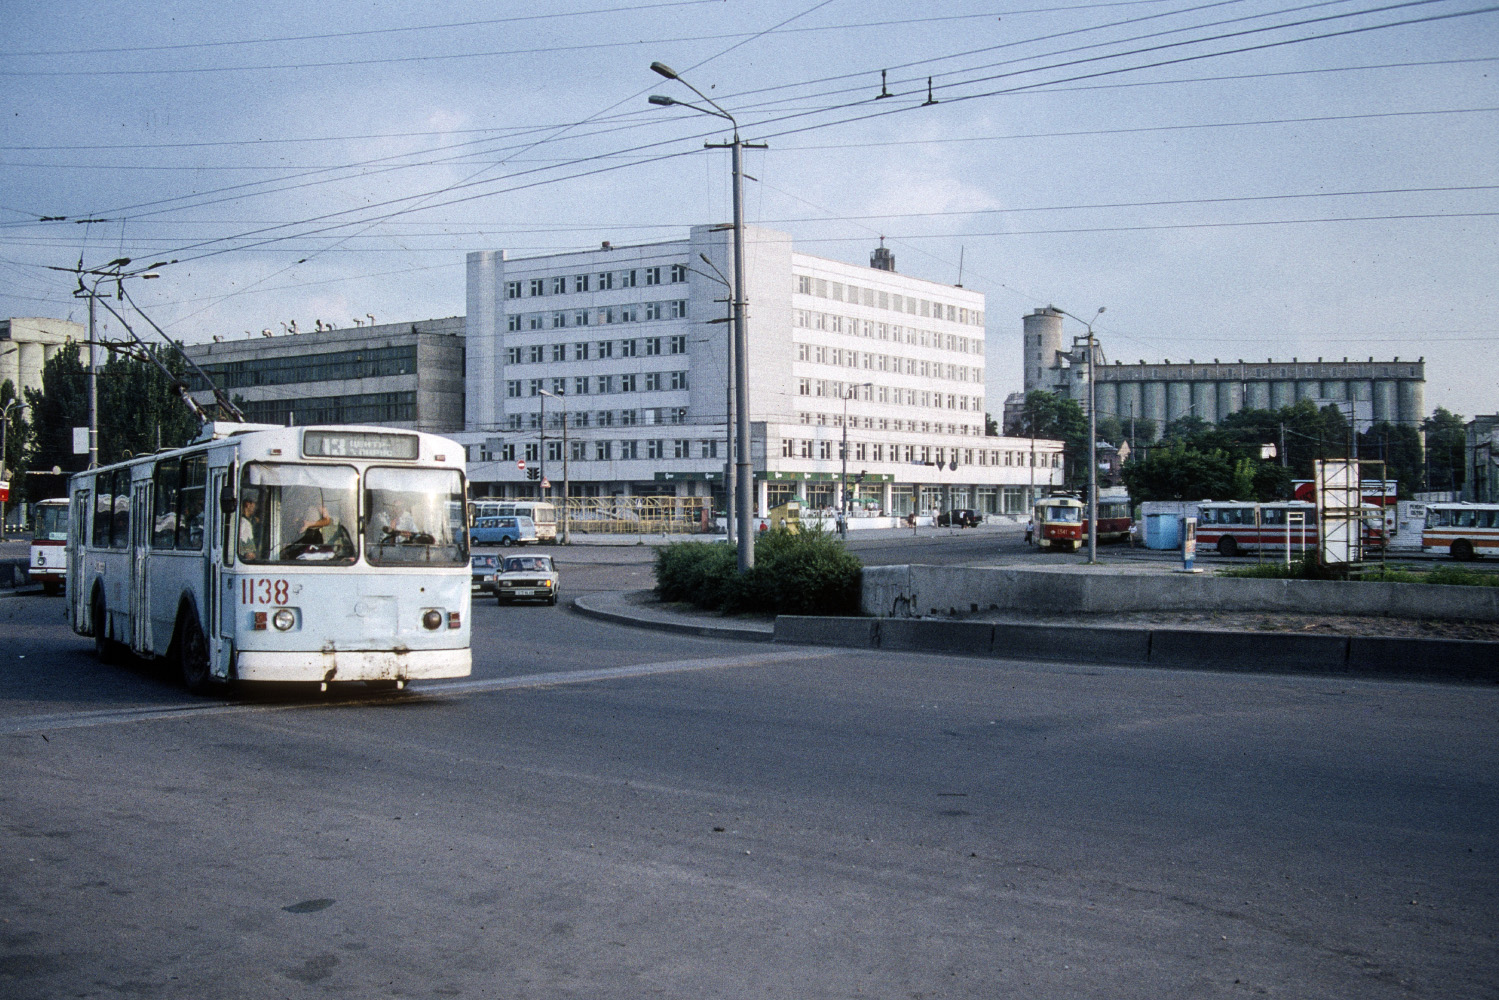 Dnyepro, ZiU-682G [G00] — 1138; Dnyepro — Old photos: Tram; Dnyepro — Old photos: Trolleybus